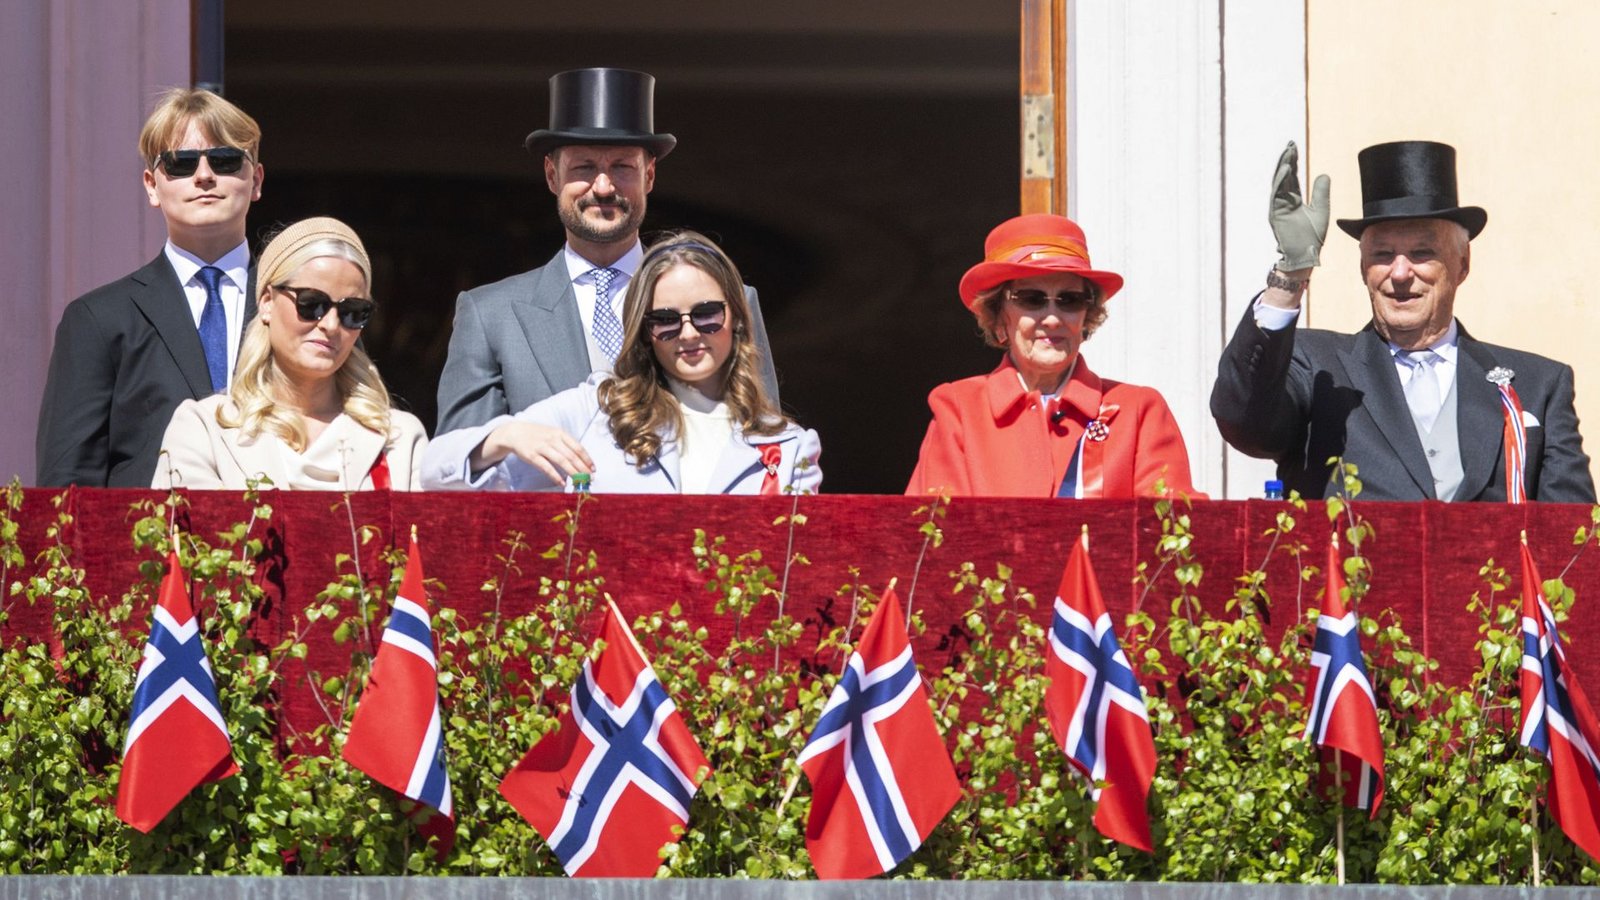 Traditionell zeigt sich die königliche Familie am 17. Mai auf dem Balkon des Schlosses in Oslo.Foto: dpa/Annika Byrde